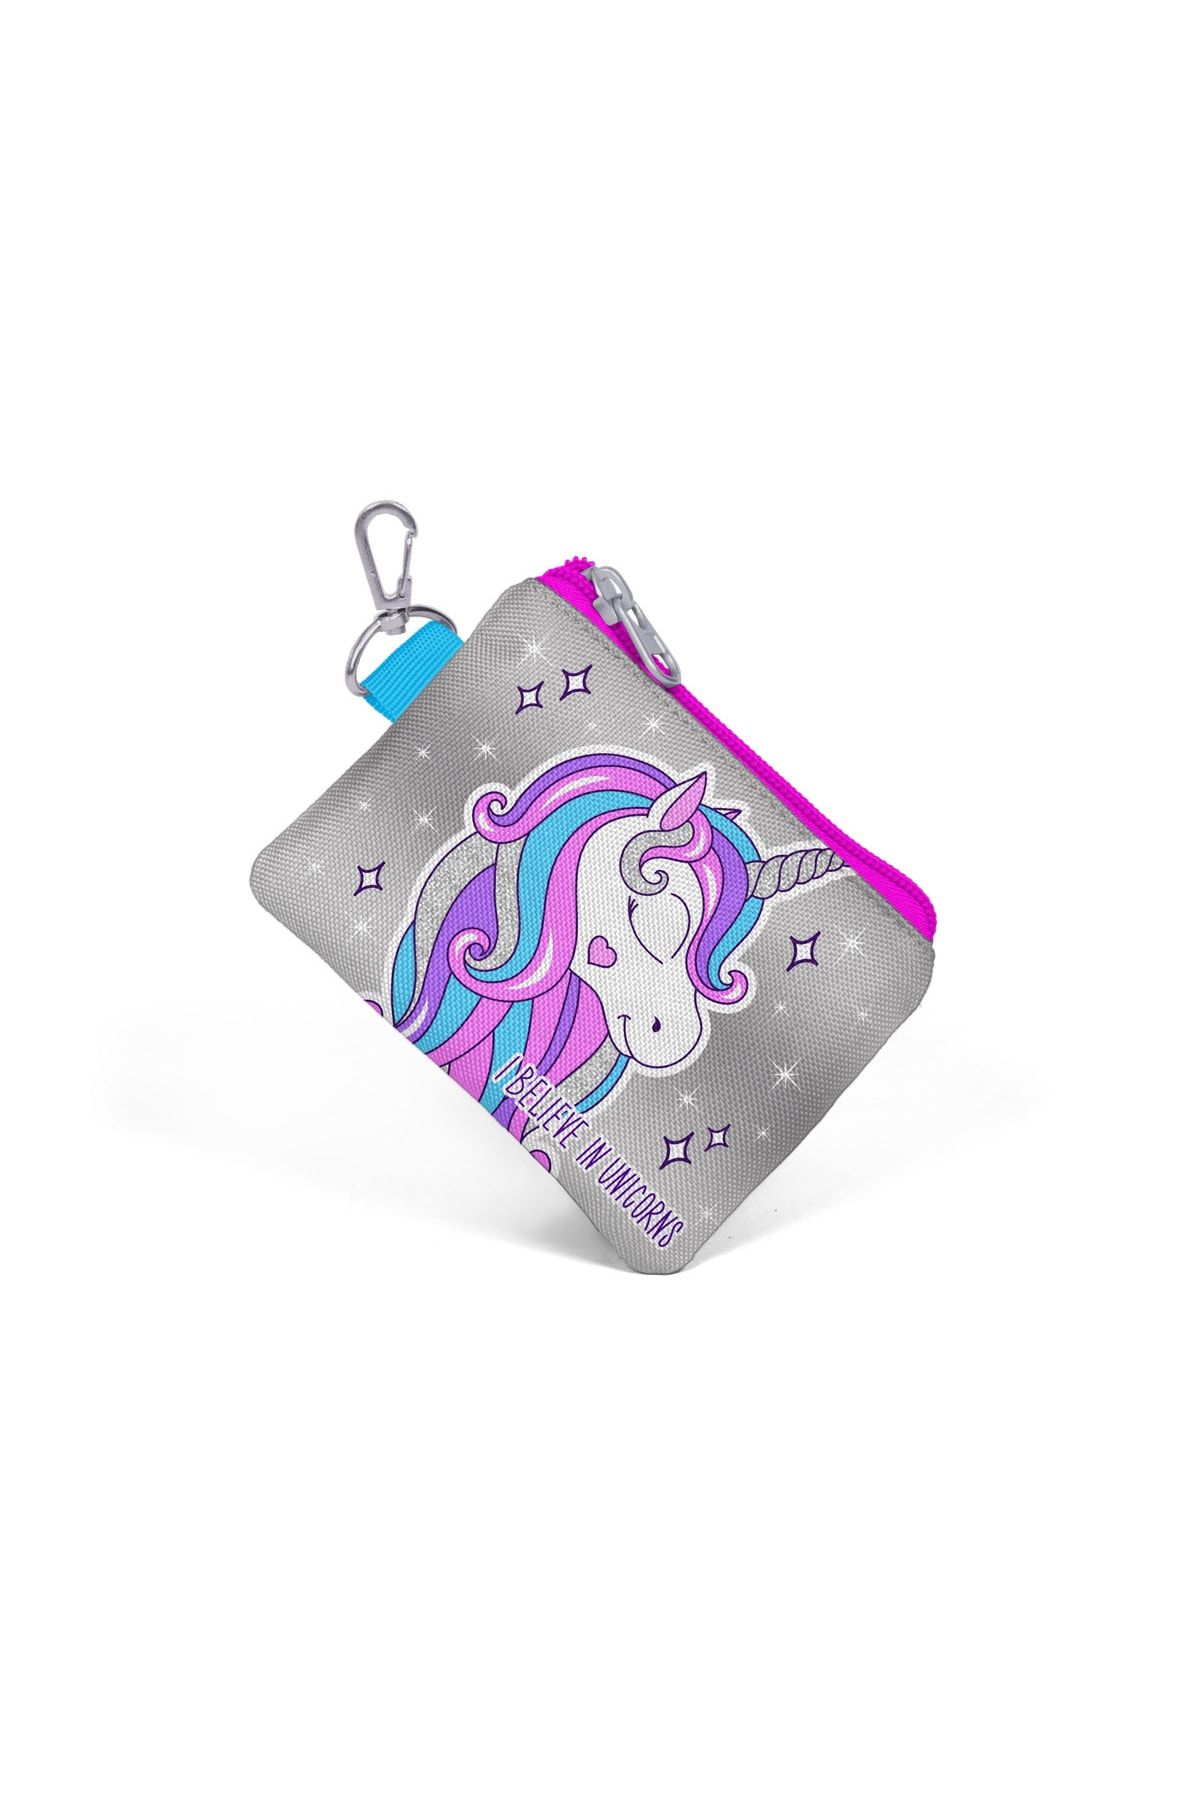 Coral High Kids Pembe Gümüş Unicorn Desenli Bozuk Para Çantası Mini Cüzdan